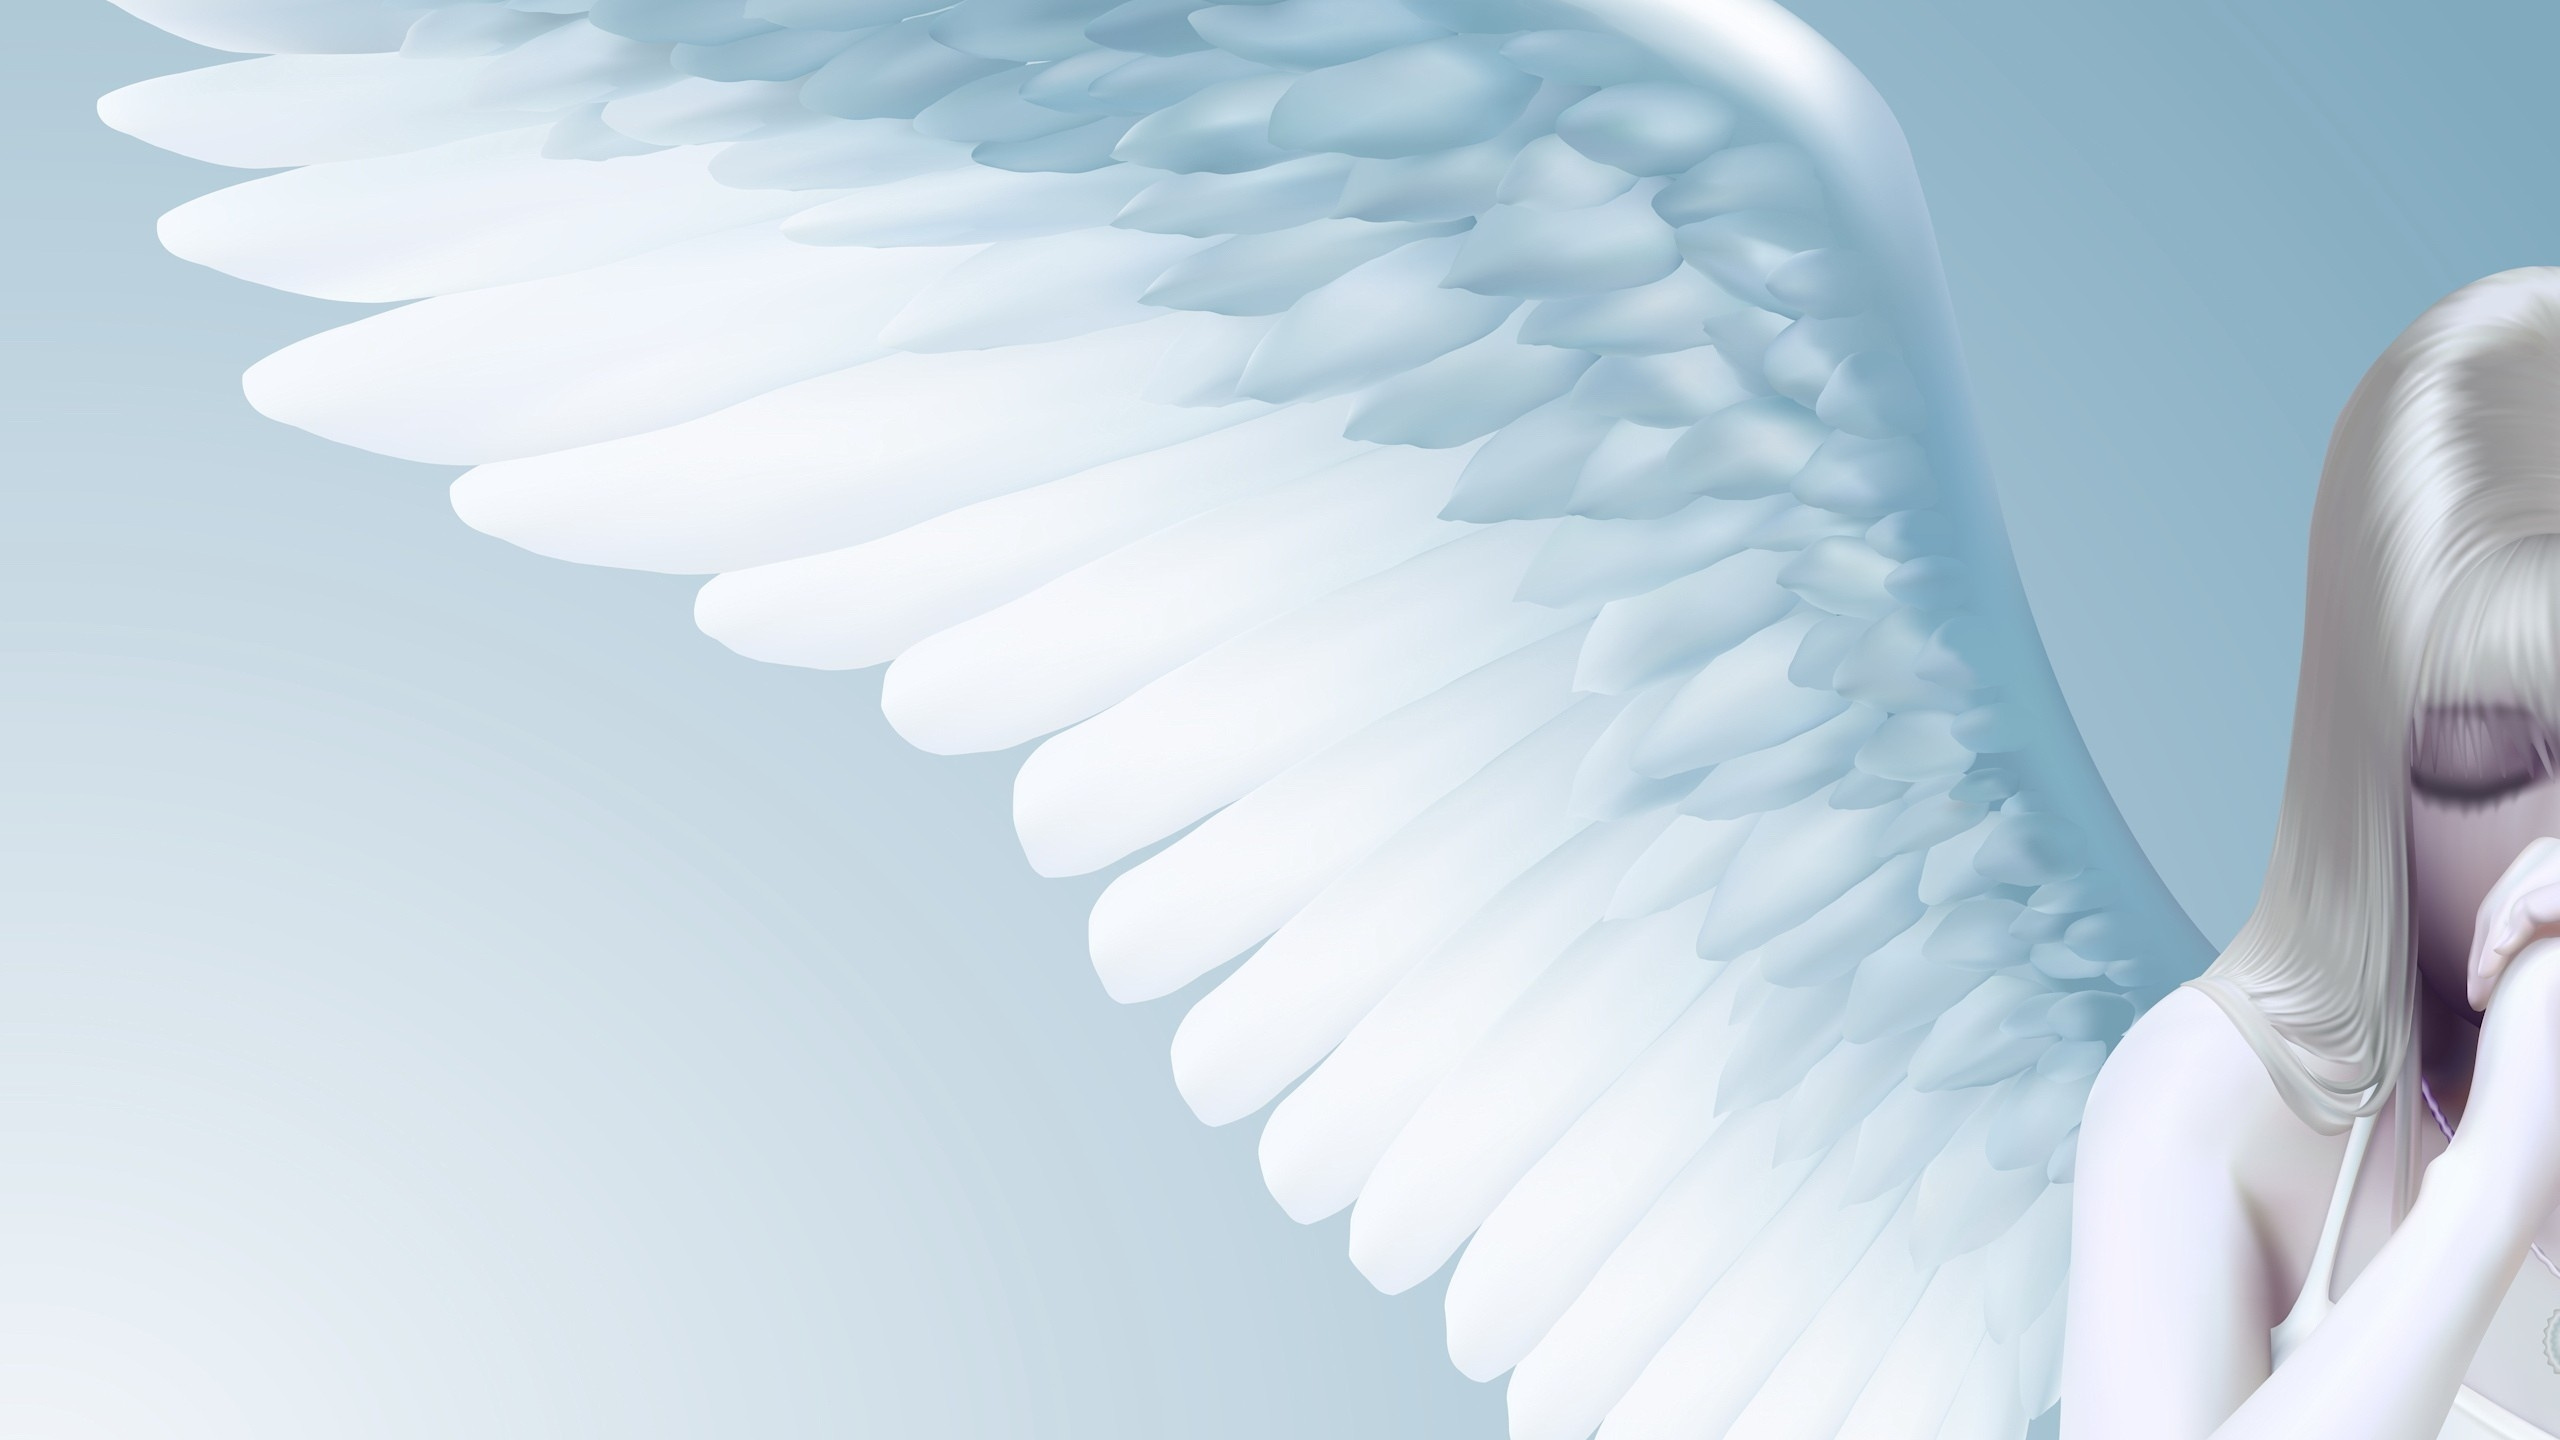 天使, 翼, 主题, 梦想, 天空 壁纸 2560x1440 允许